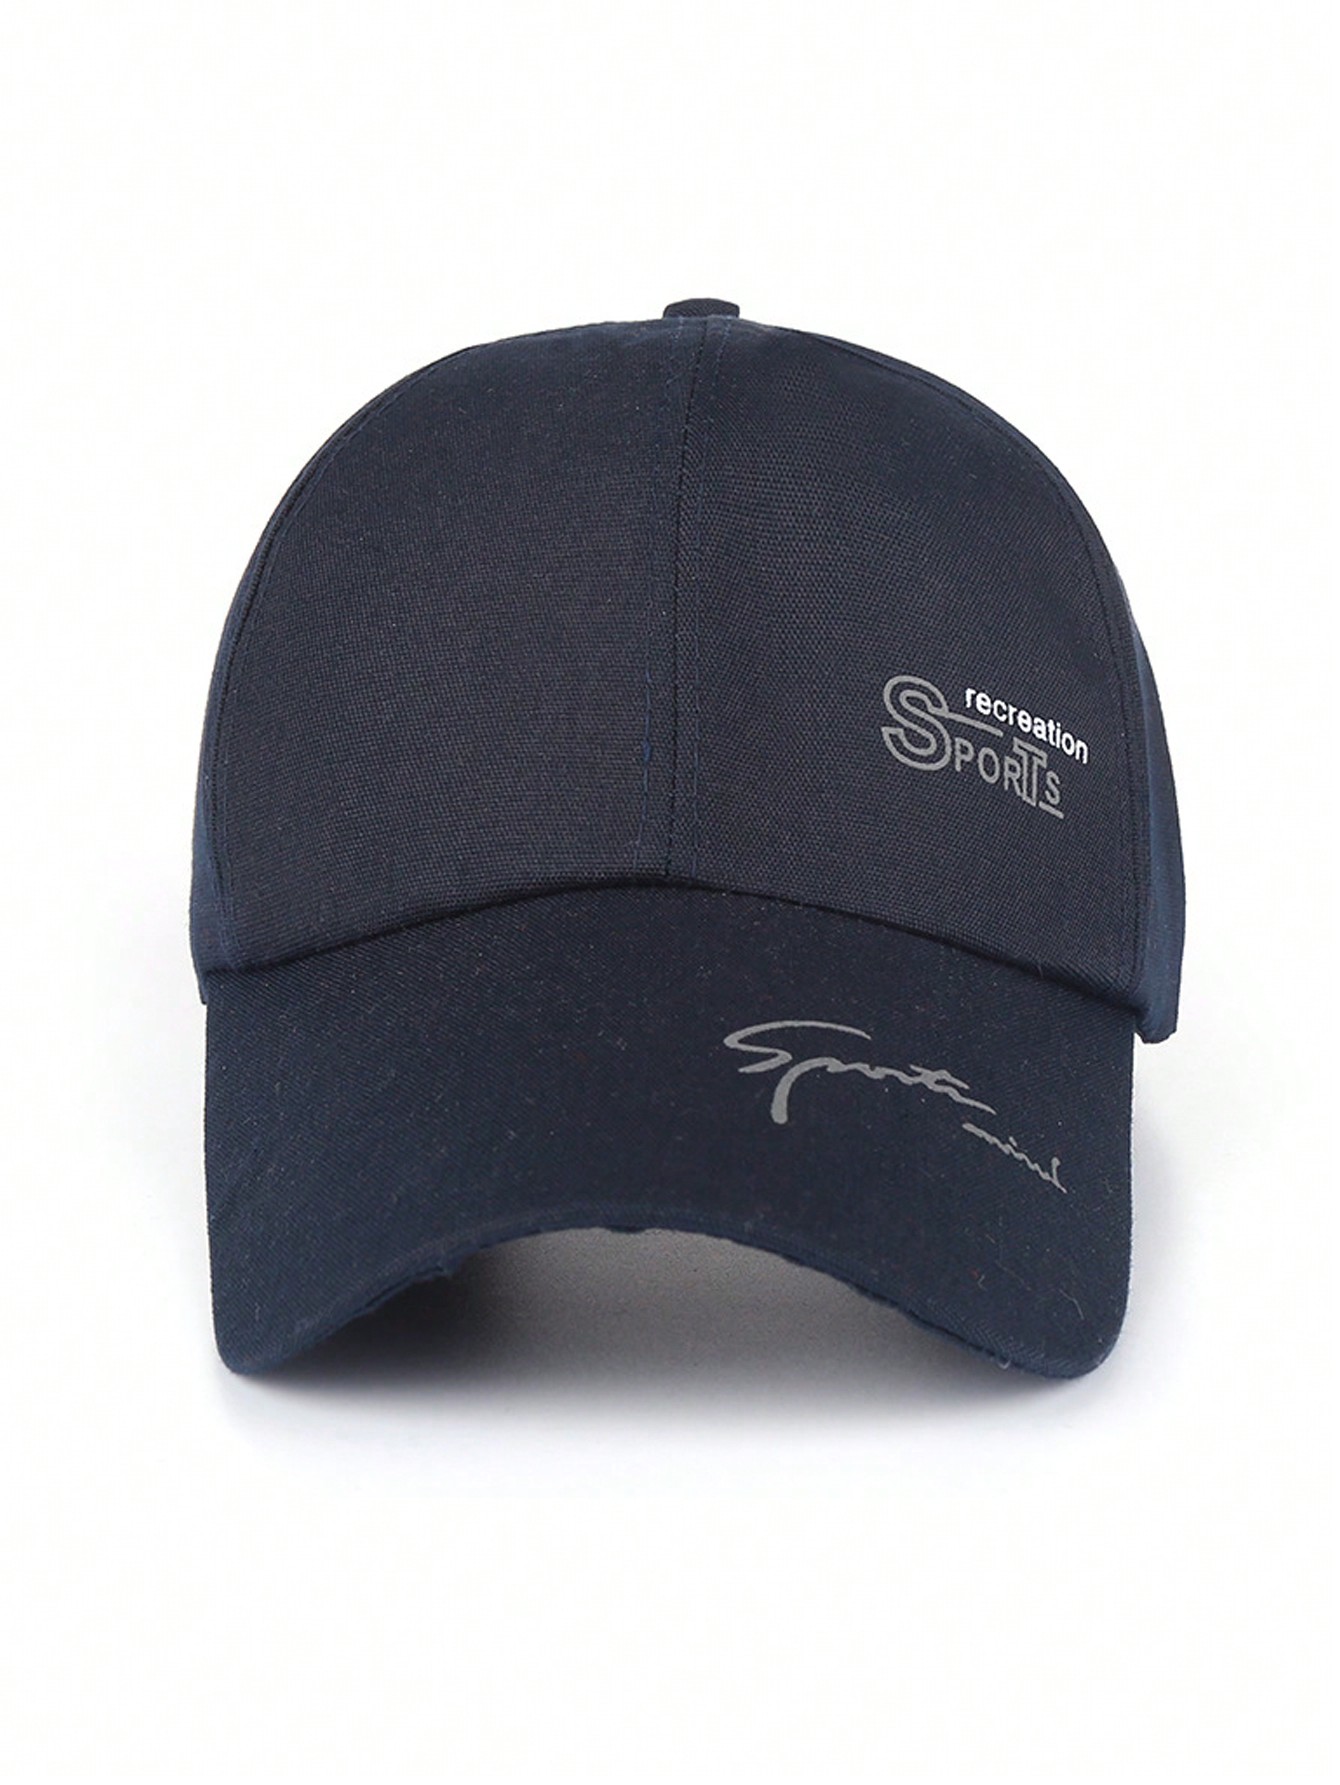 1 шт. Мужская темно-синяя парусиновая кепка для занятий спортом на открытом воздухе - кепка-утконос можно носить в повседневном стиле, темно-синий